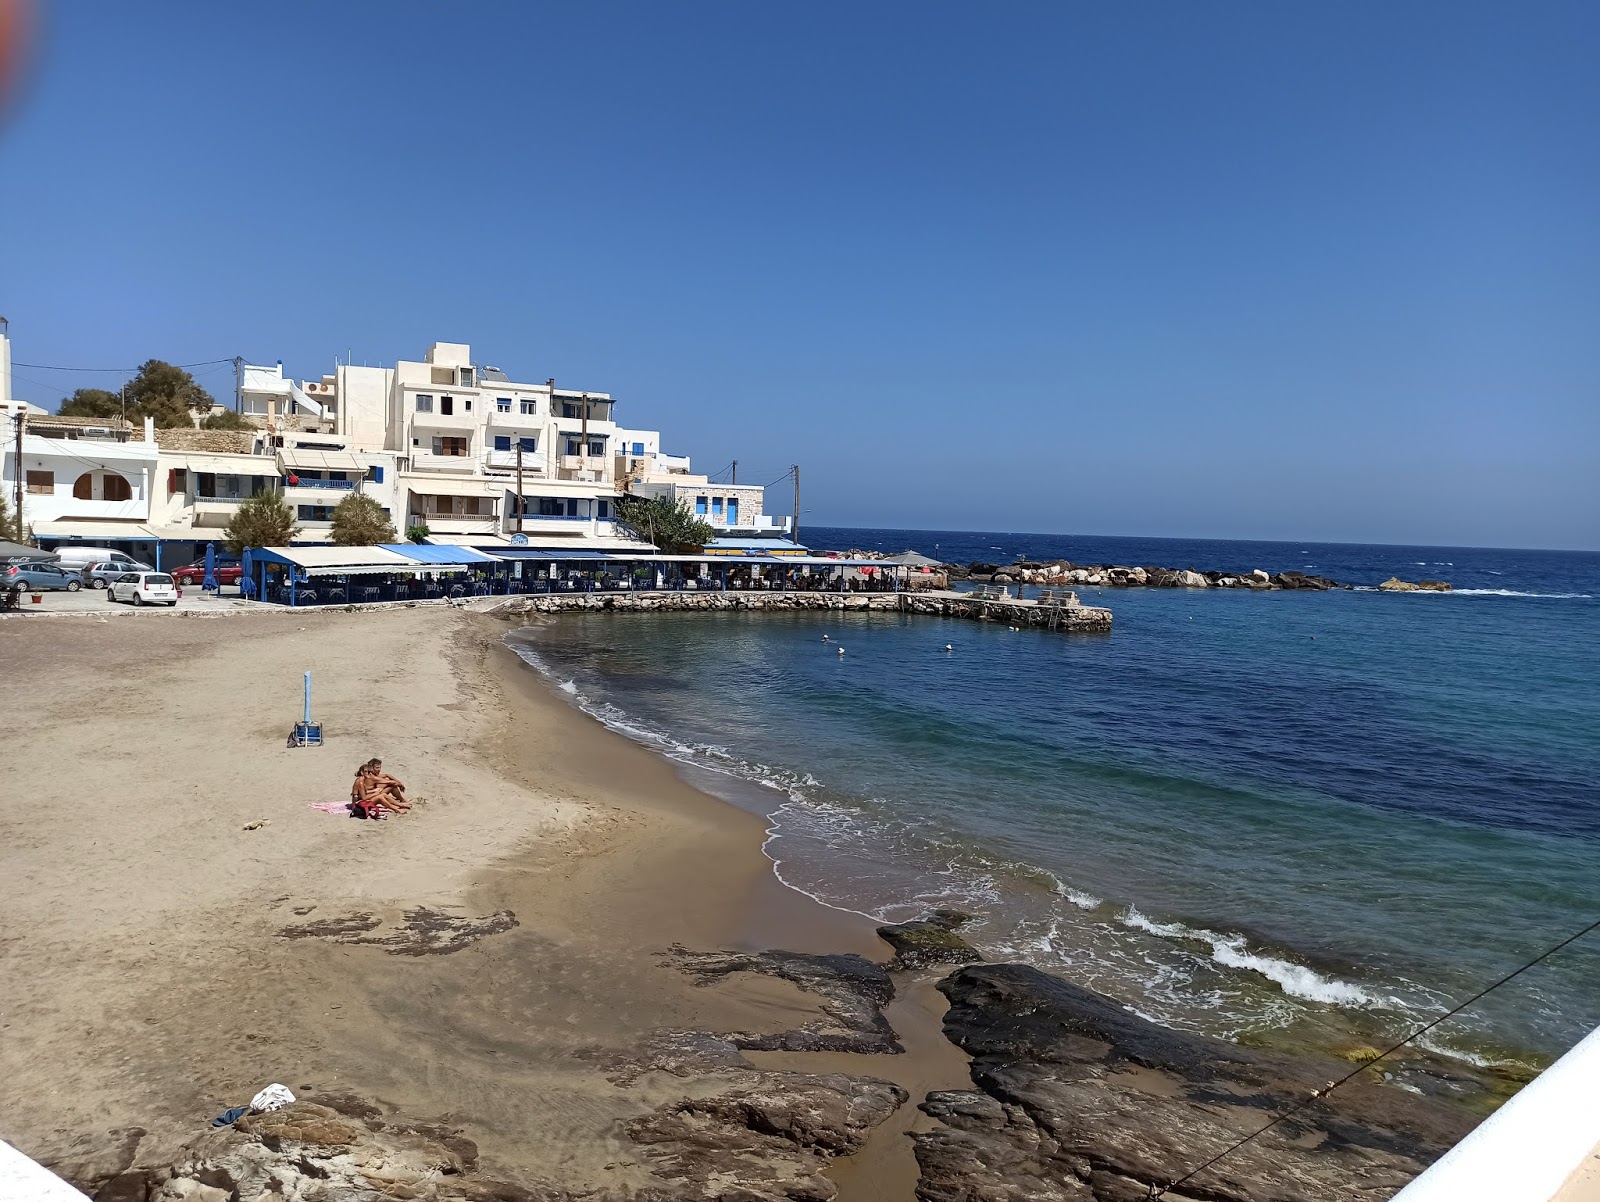 Apollonas beach'in fotoğrafı parlak ince kum yüzey ile